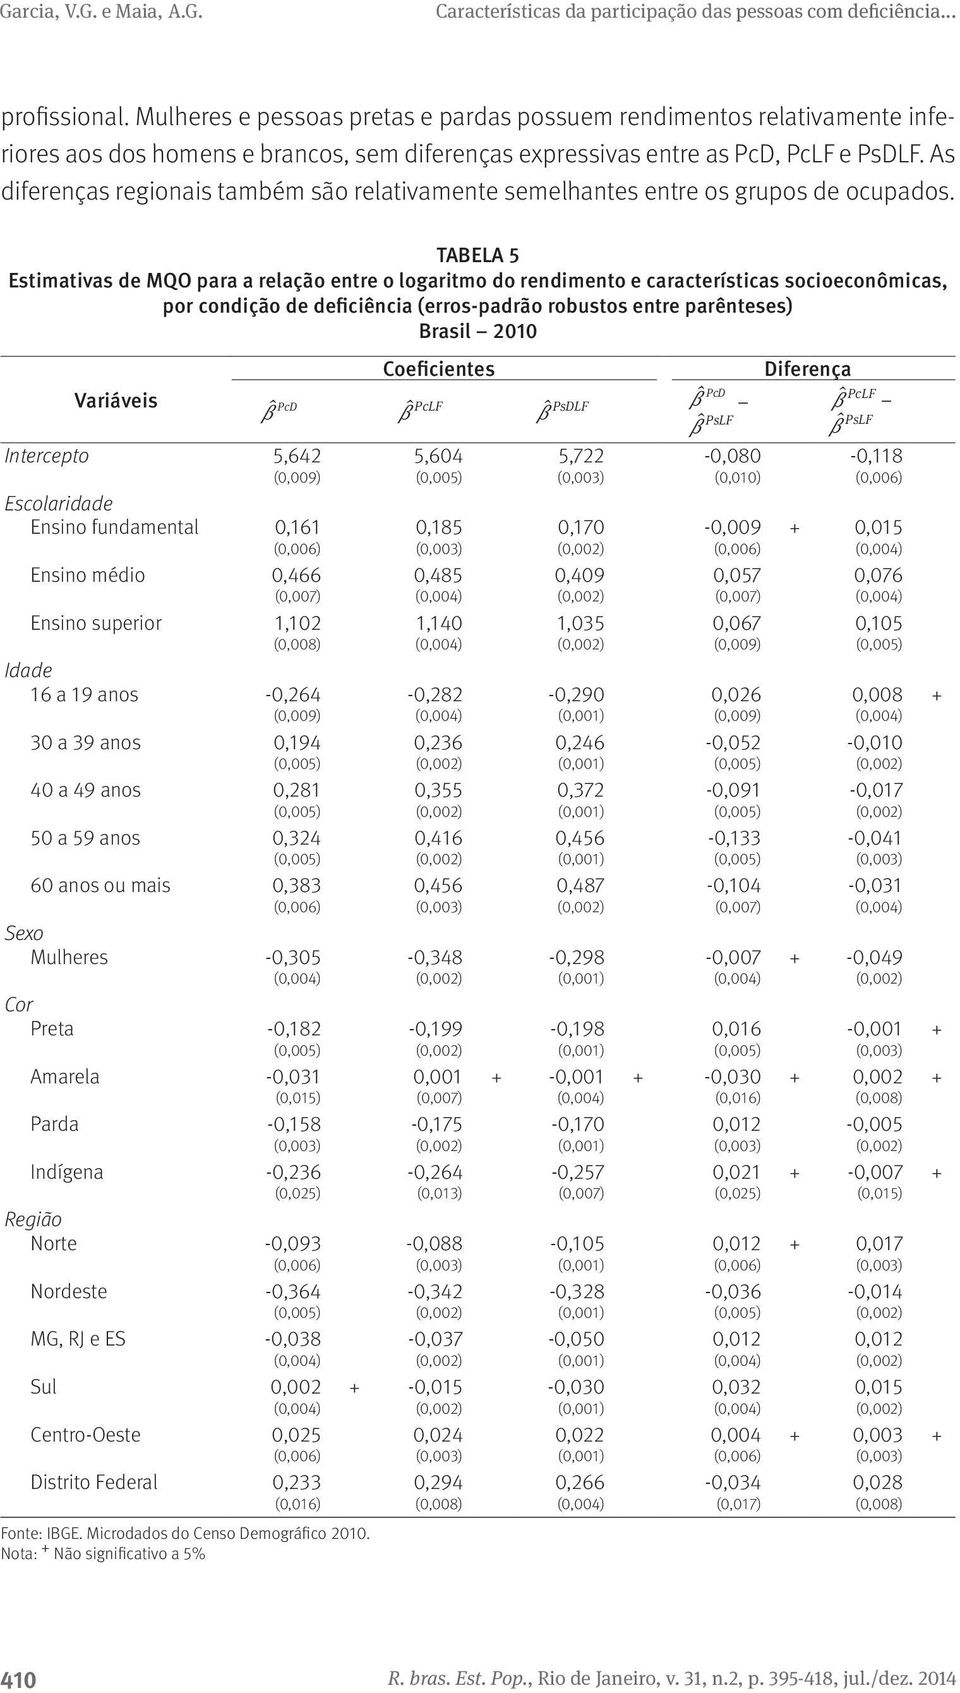 TABELA 5 Estimativas de MQO para a relação entre o logaritmo do rendimento e características socioeconômicas, por condição de deficiência (erros-padrão robustos entre parênteses) Brasil 2010